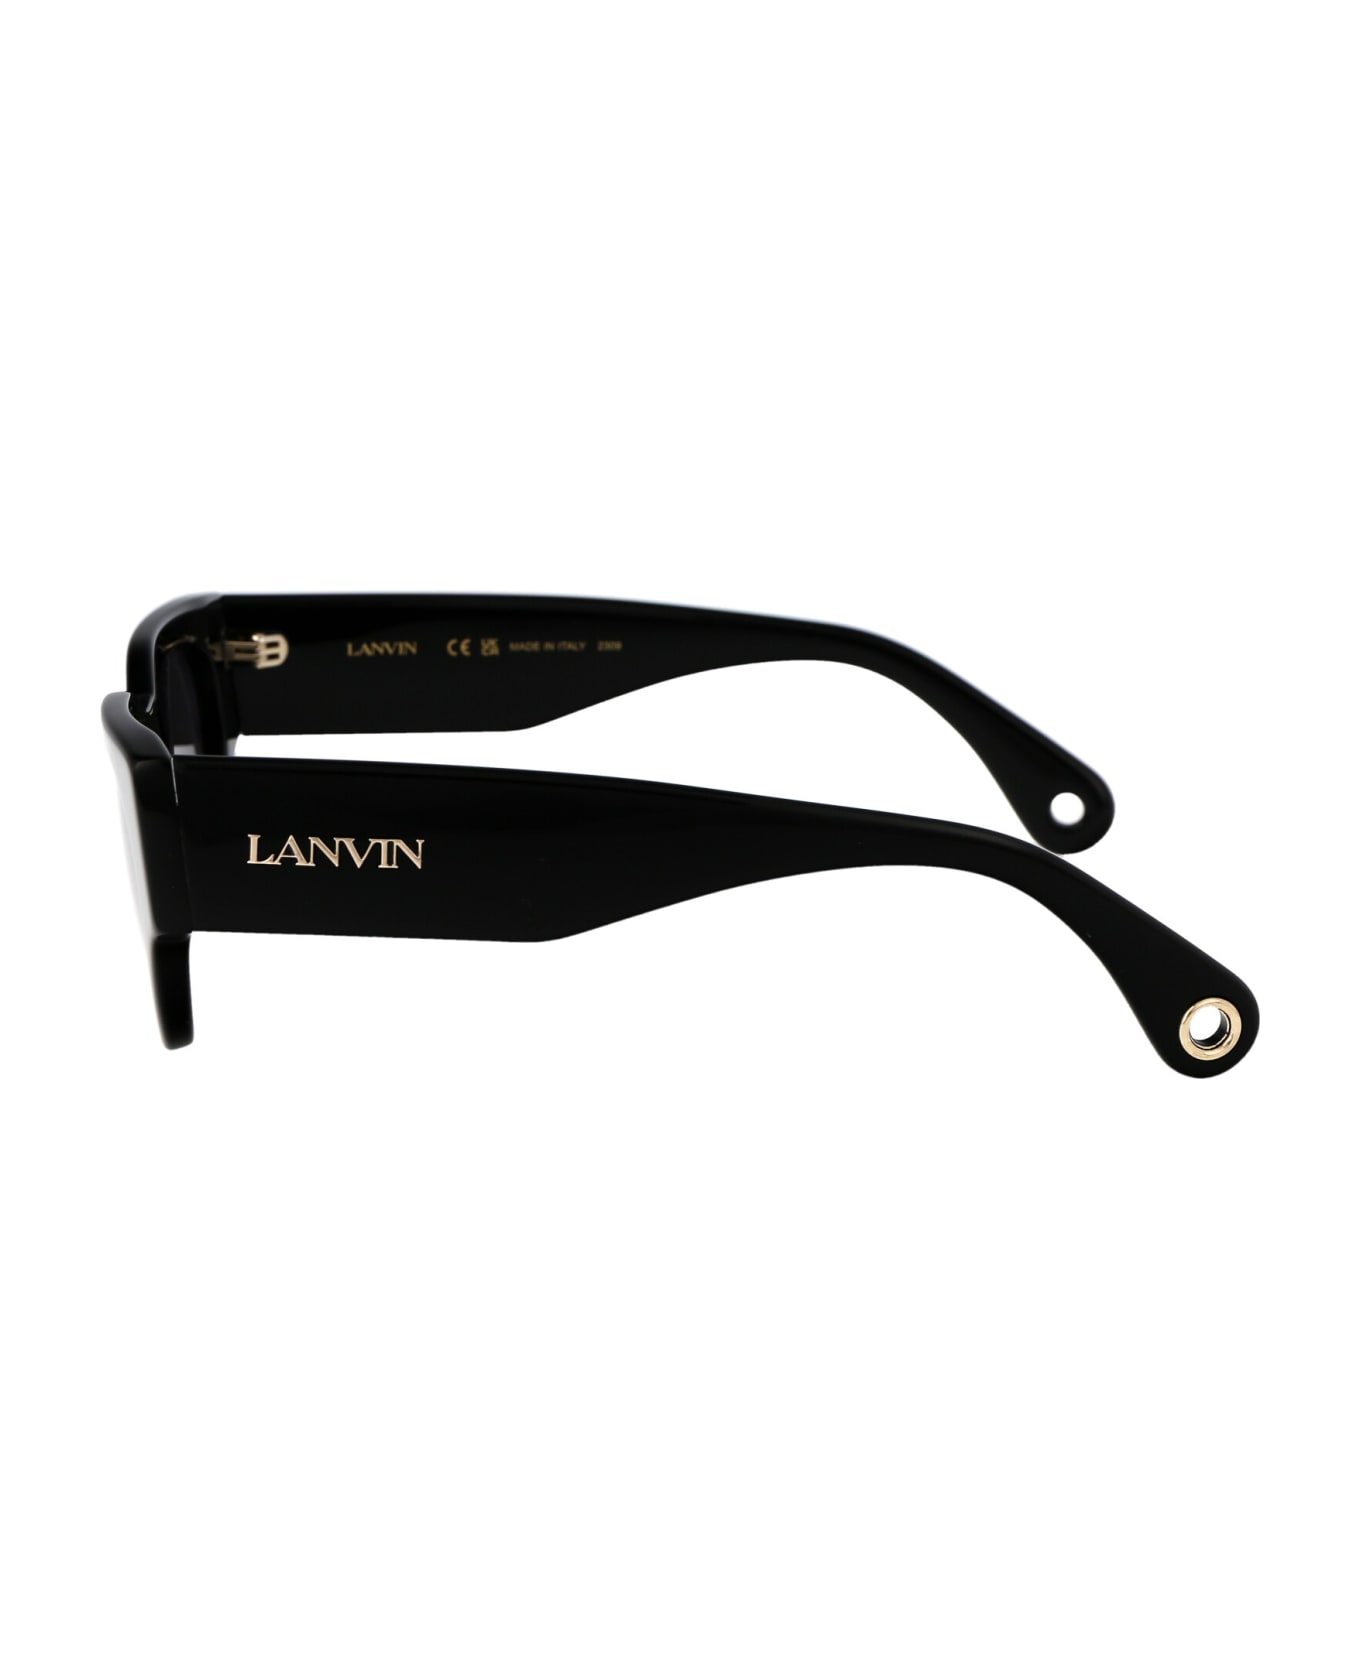 Lanvin Lnv670s Sunglasses - 001 BLACK